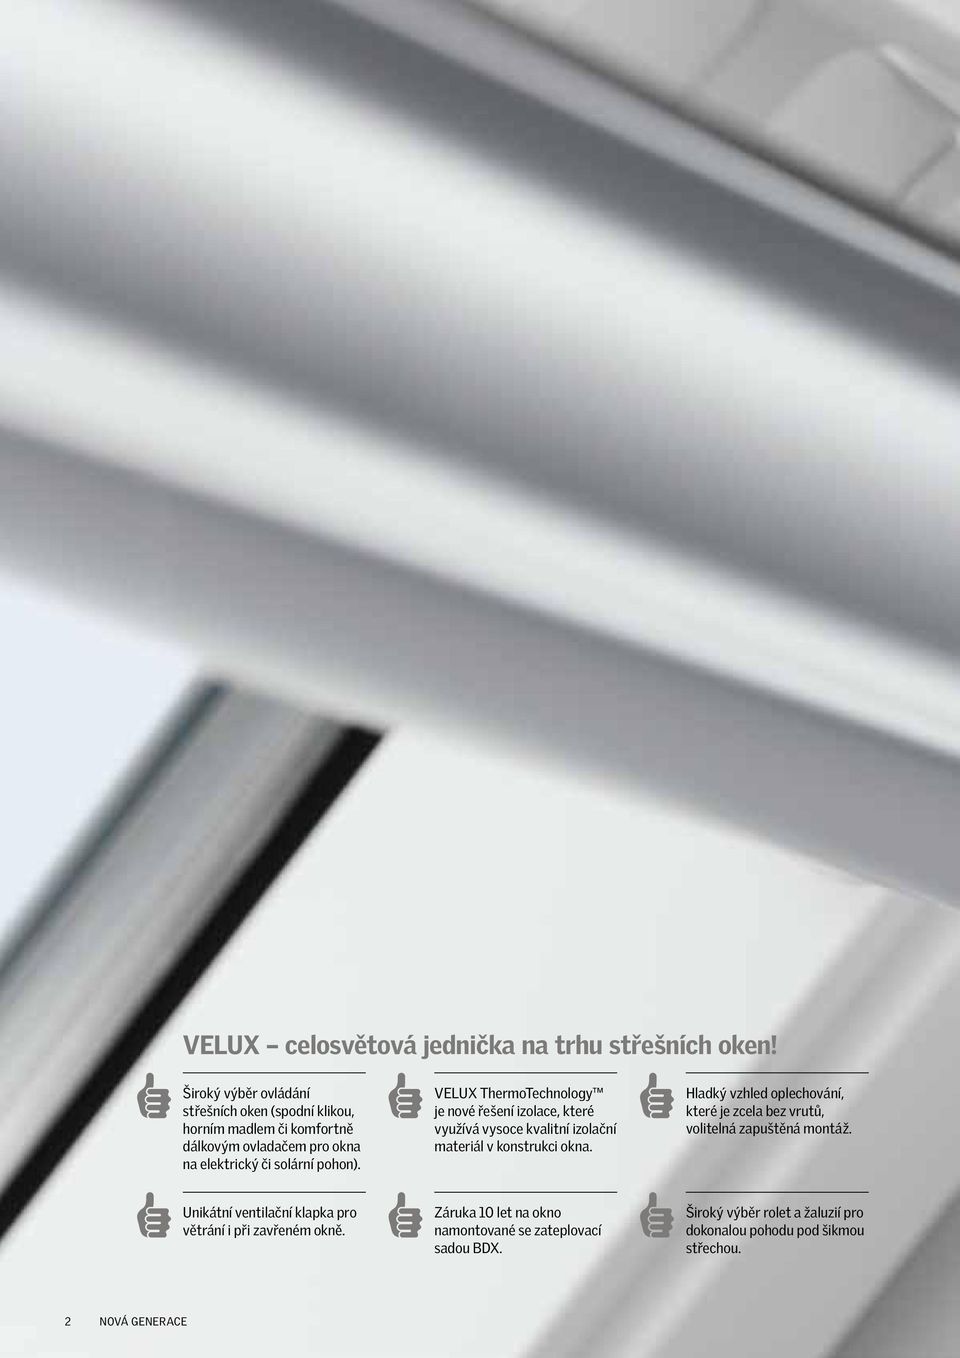 VELUX ThermoTechnology je nové řešení izolace, které využívá vysoce kvalitní izolační materiál v konstrukci okna.